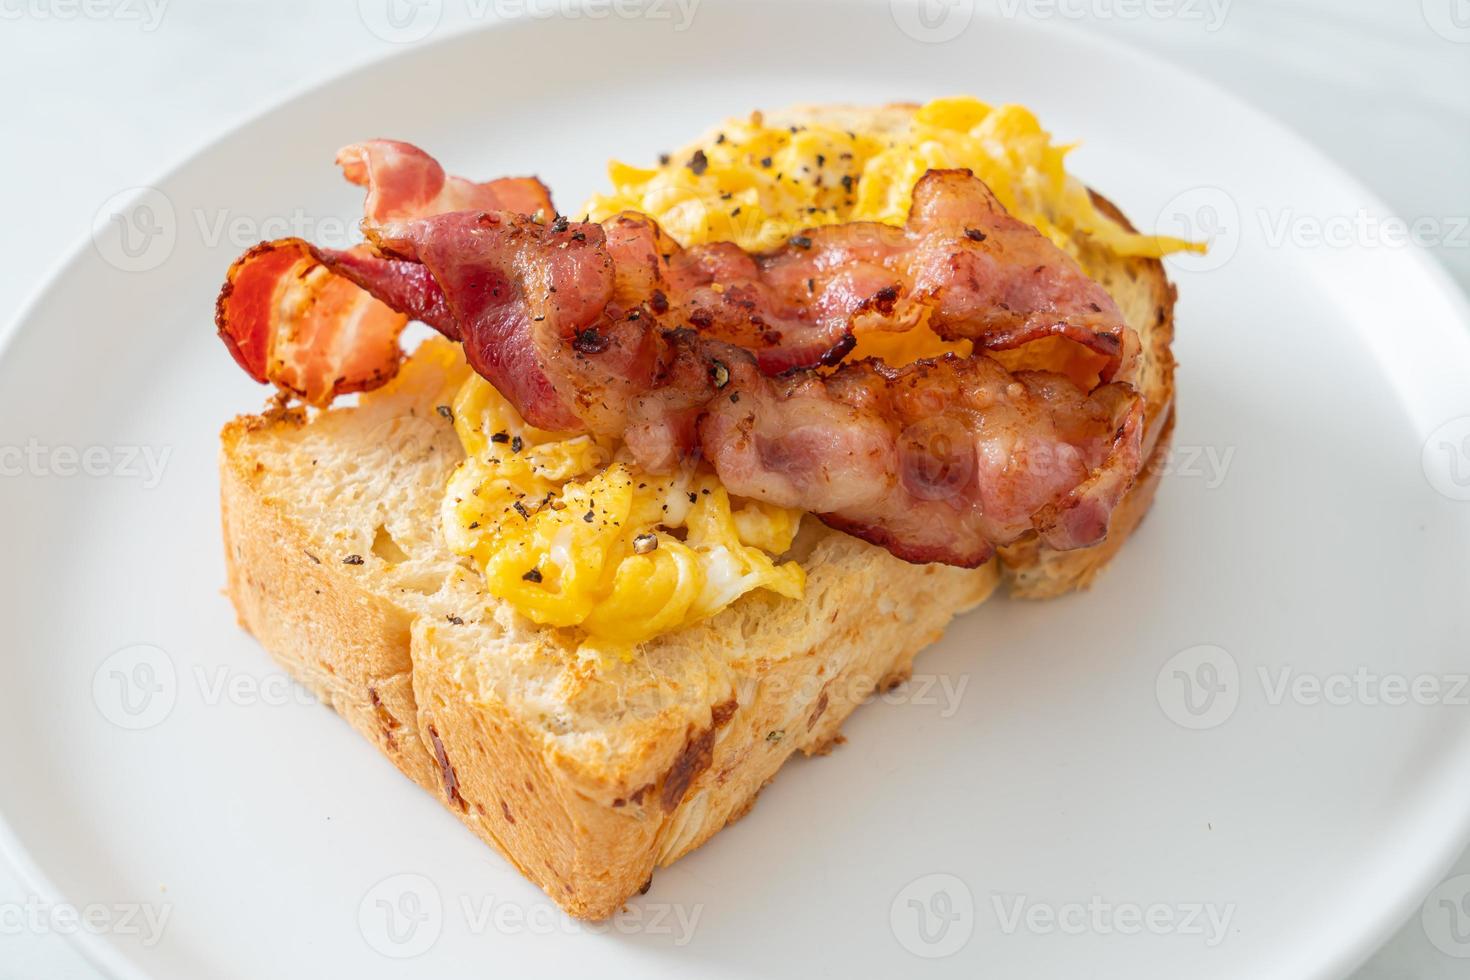 torrada de pão com ovo mexido e bacon em prato branco foto